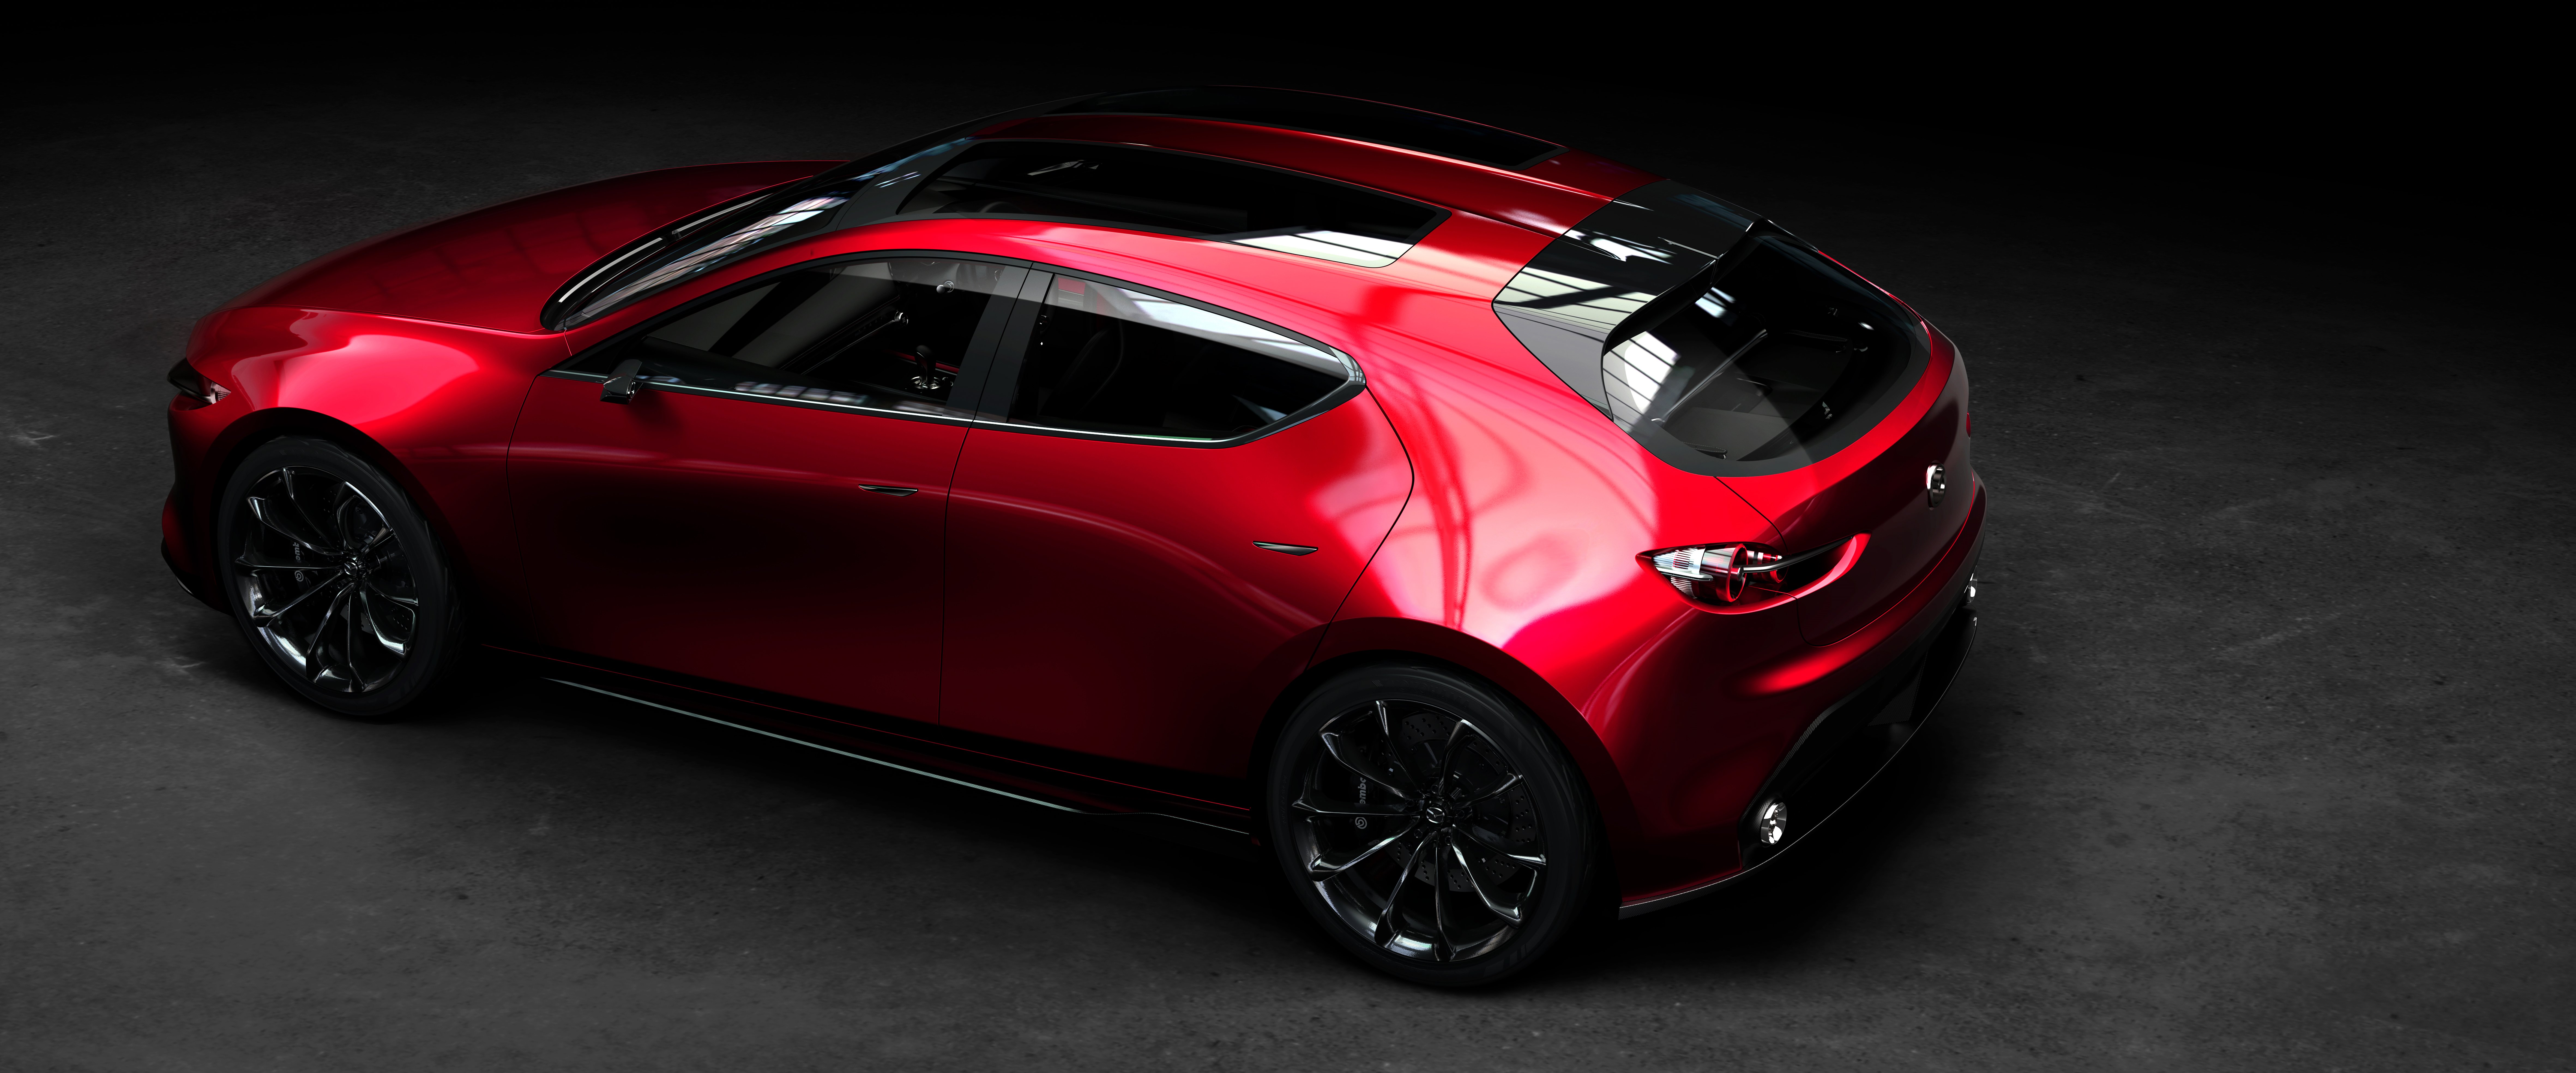 Mazda Mazda3 Hatchback best restyling